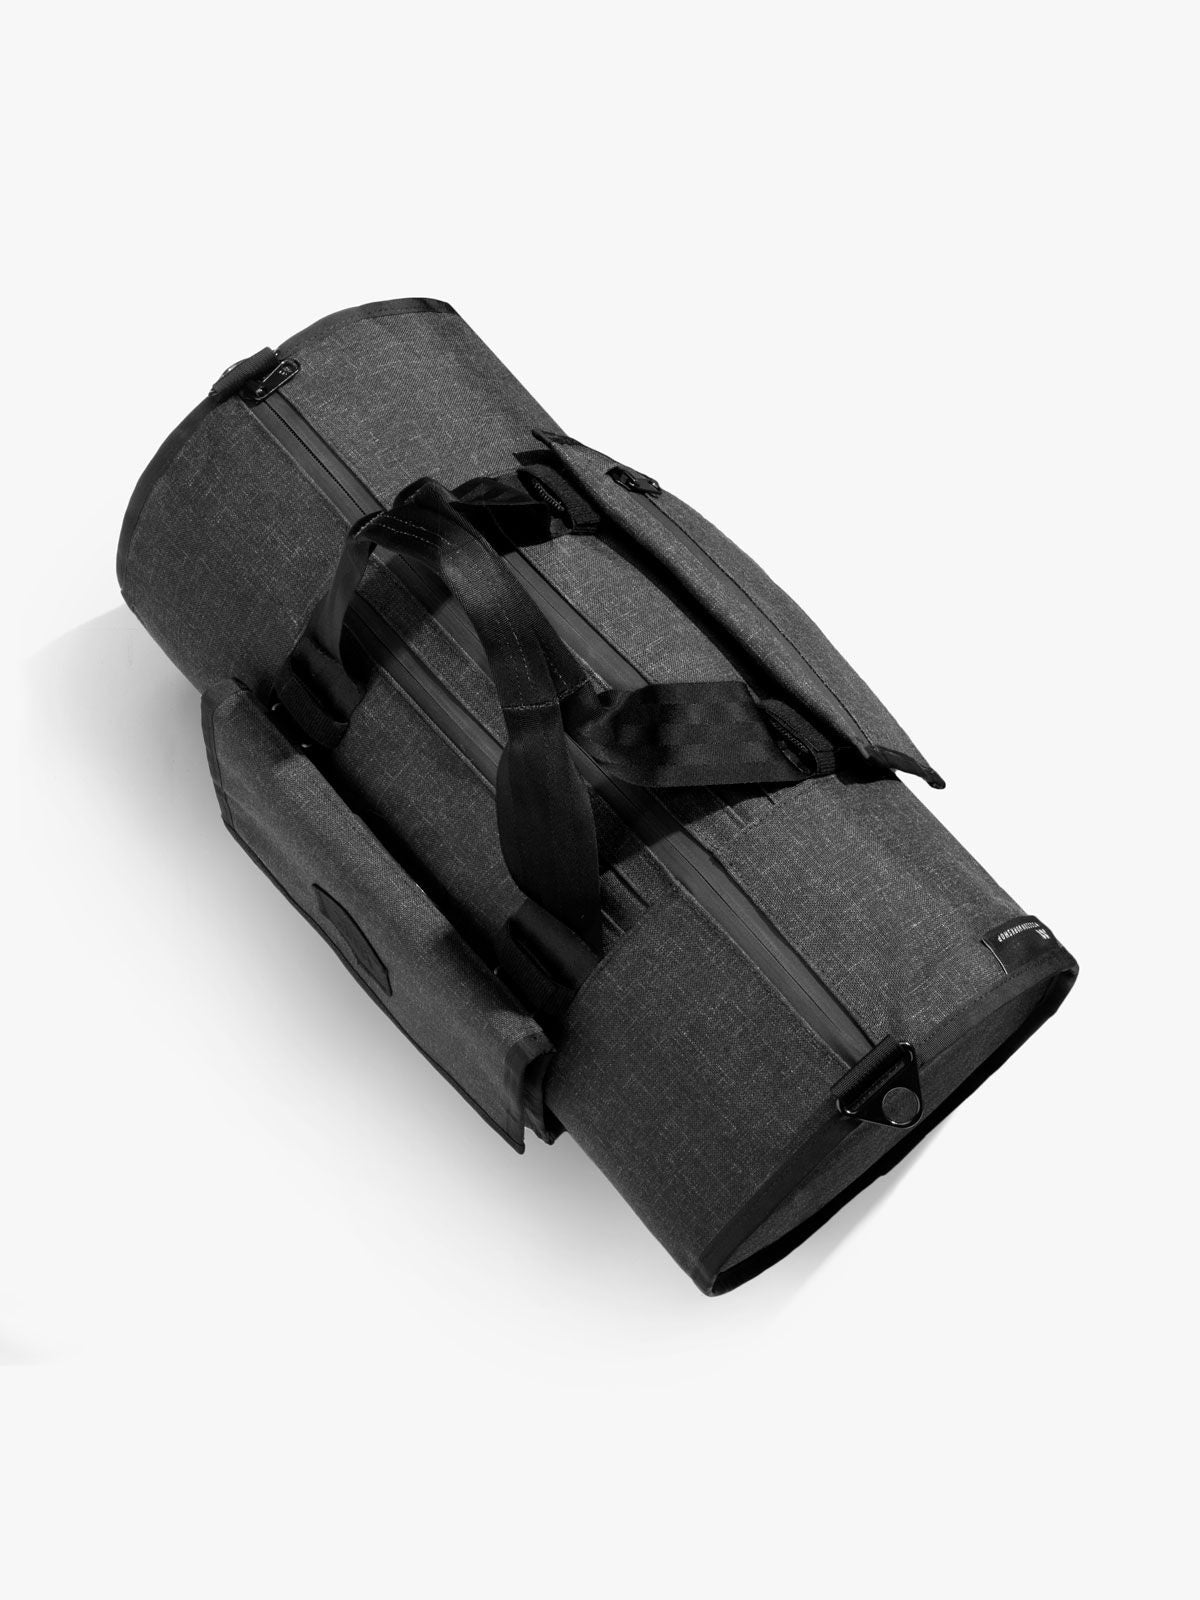 Arkiv Mini Folio by Mission Workshop - Weatherproof Bags & Technical Apparel - San Francisco & Los Angeles - Construit pour durer - Garanti pour toujours